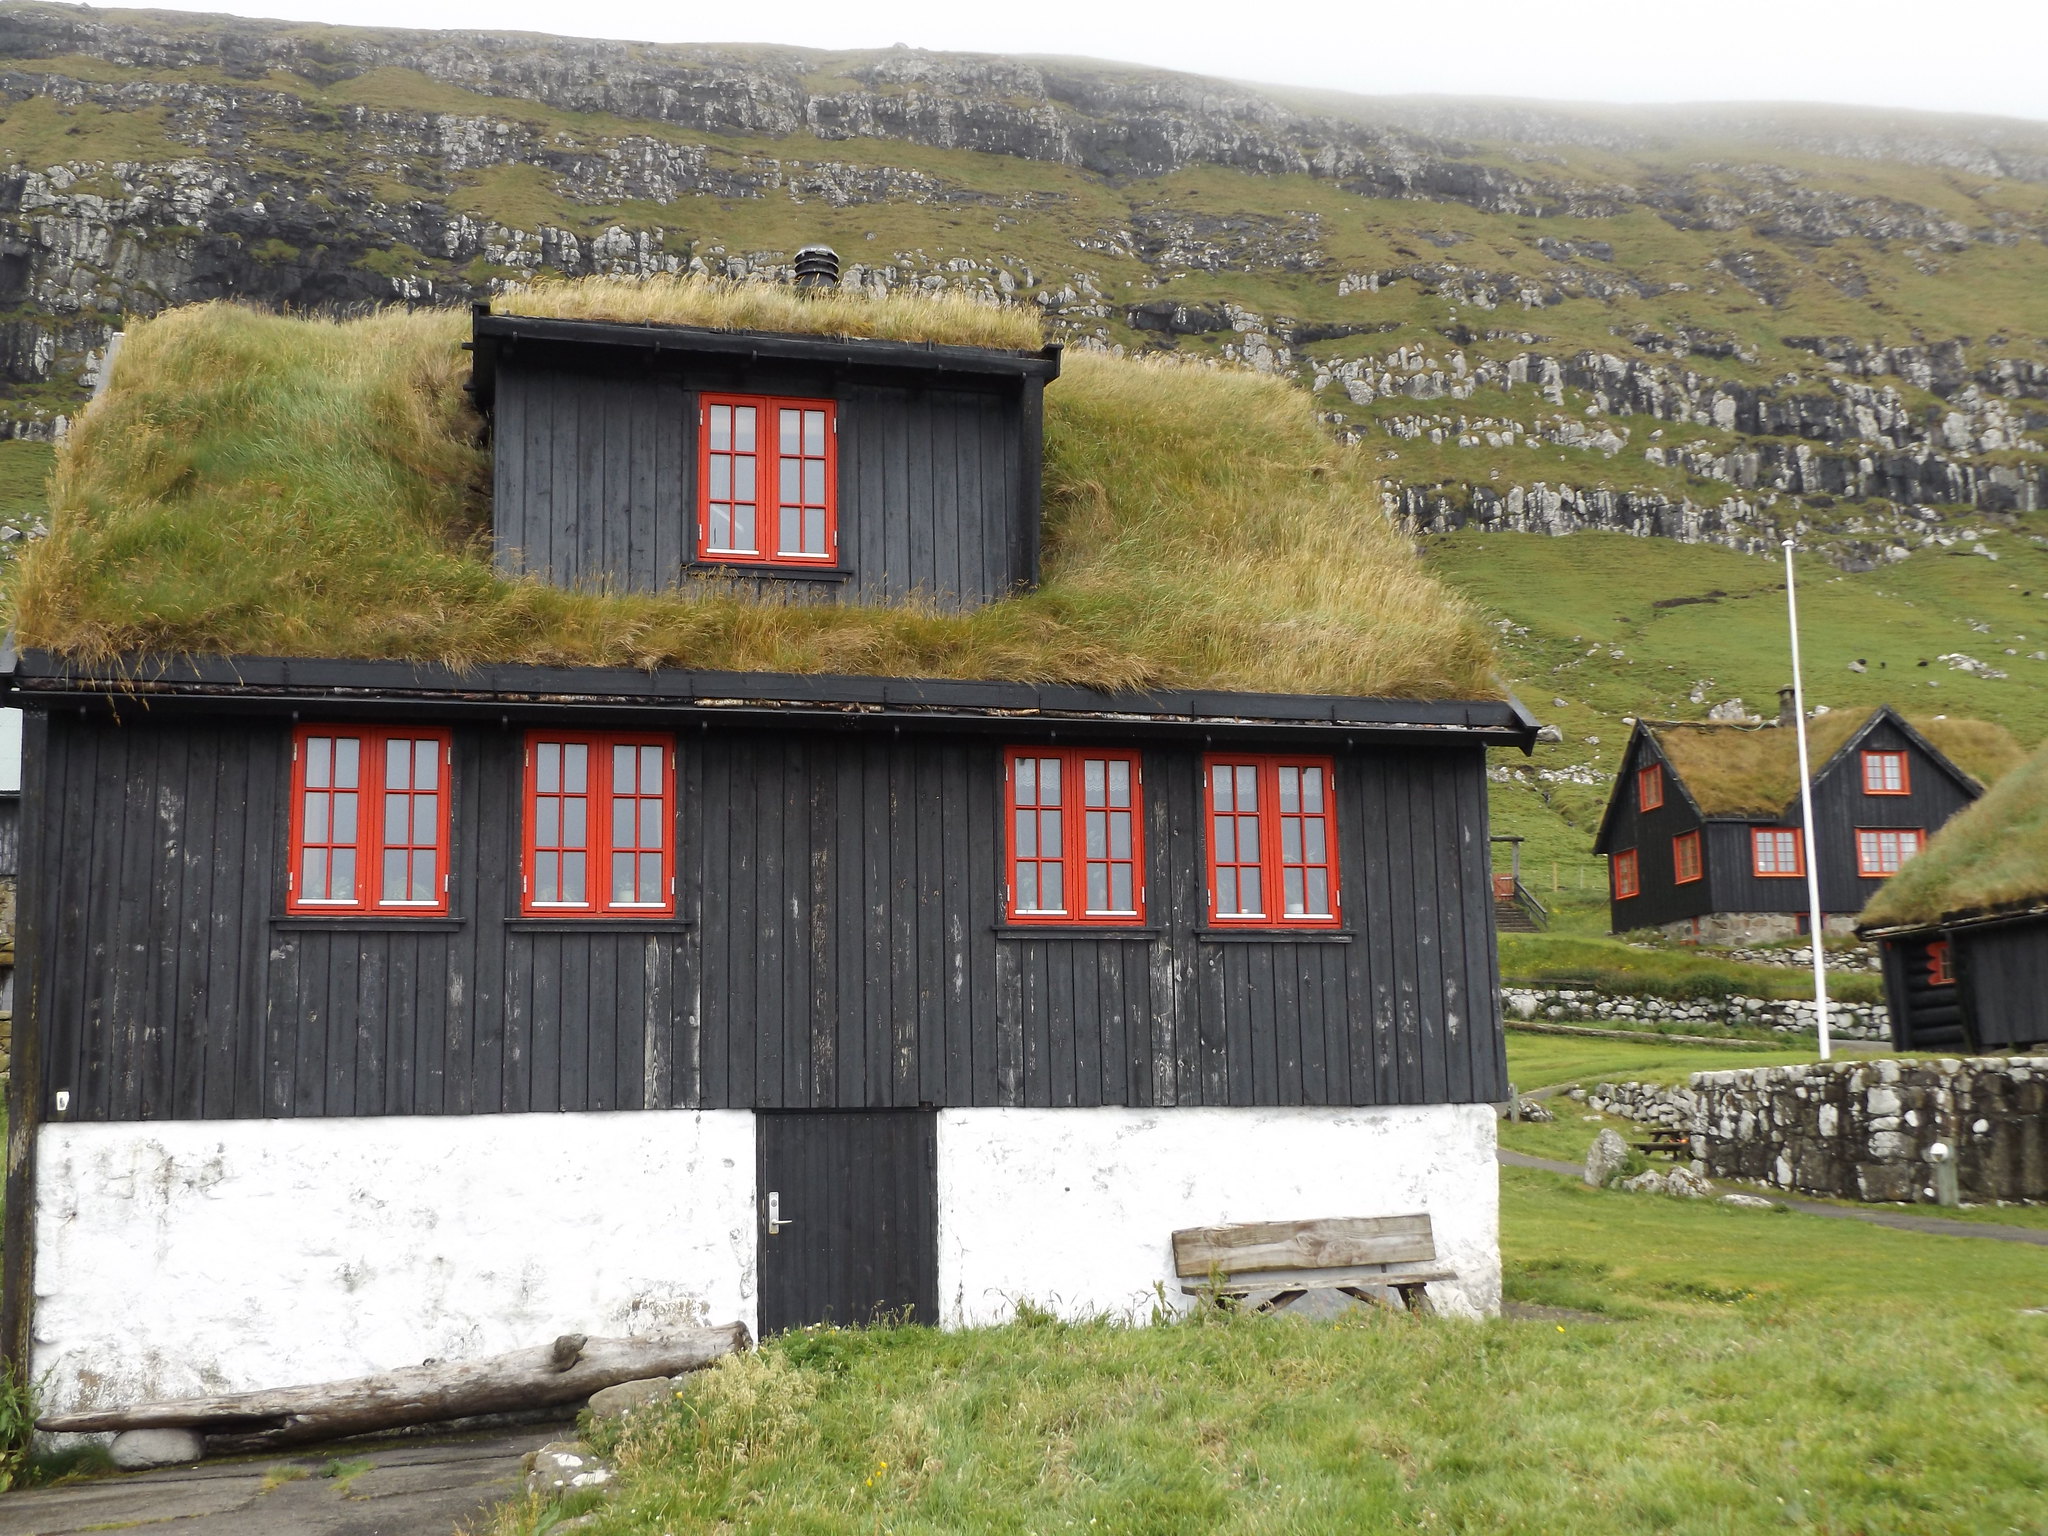 Houses in Kirkjubøur, Streymoy, Faroe Islands, 14 July 2018